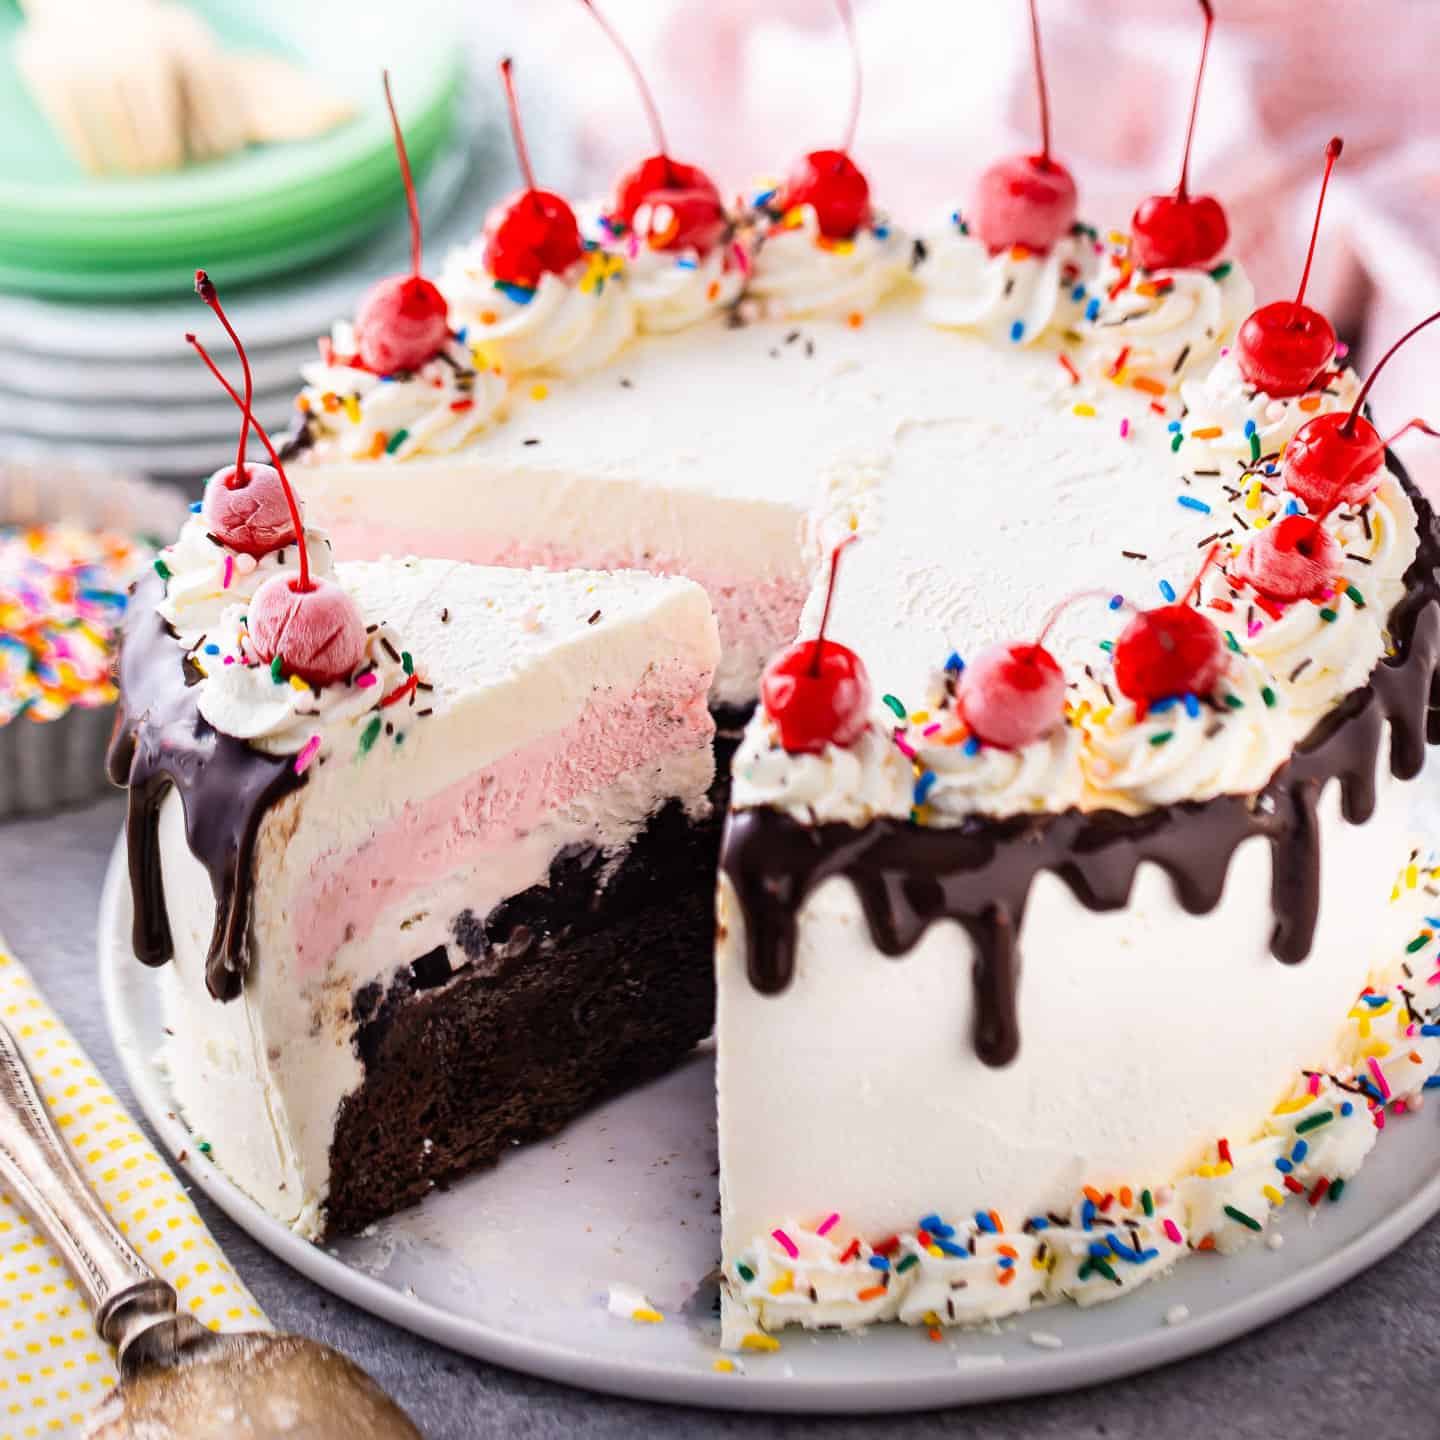 Homemade Ice Cream Cake - Live Well Bake Often